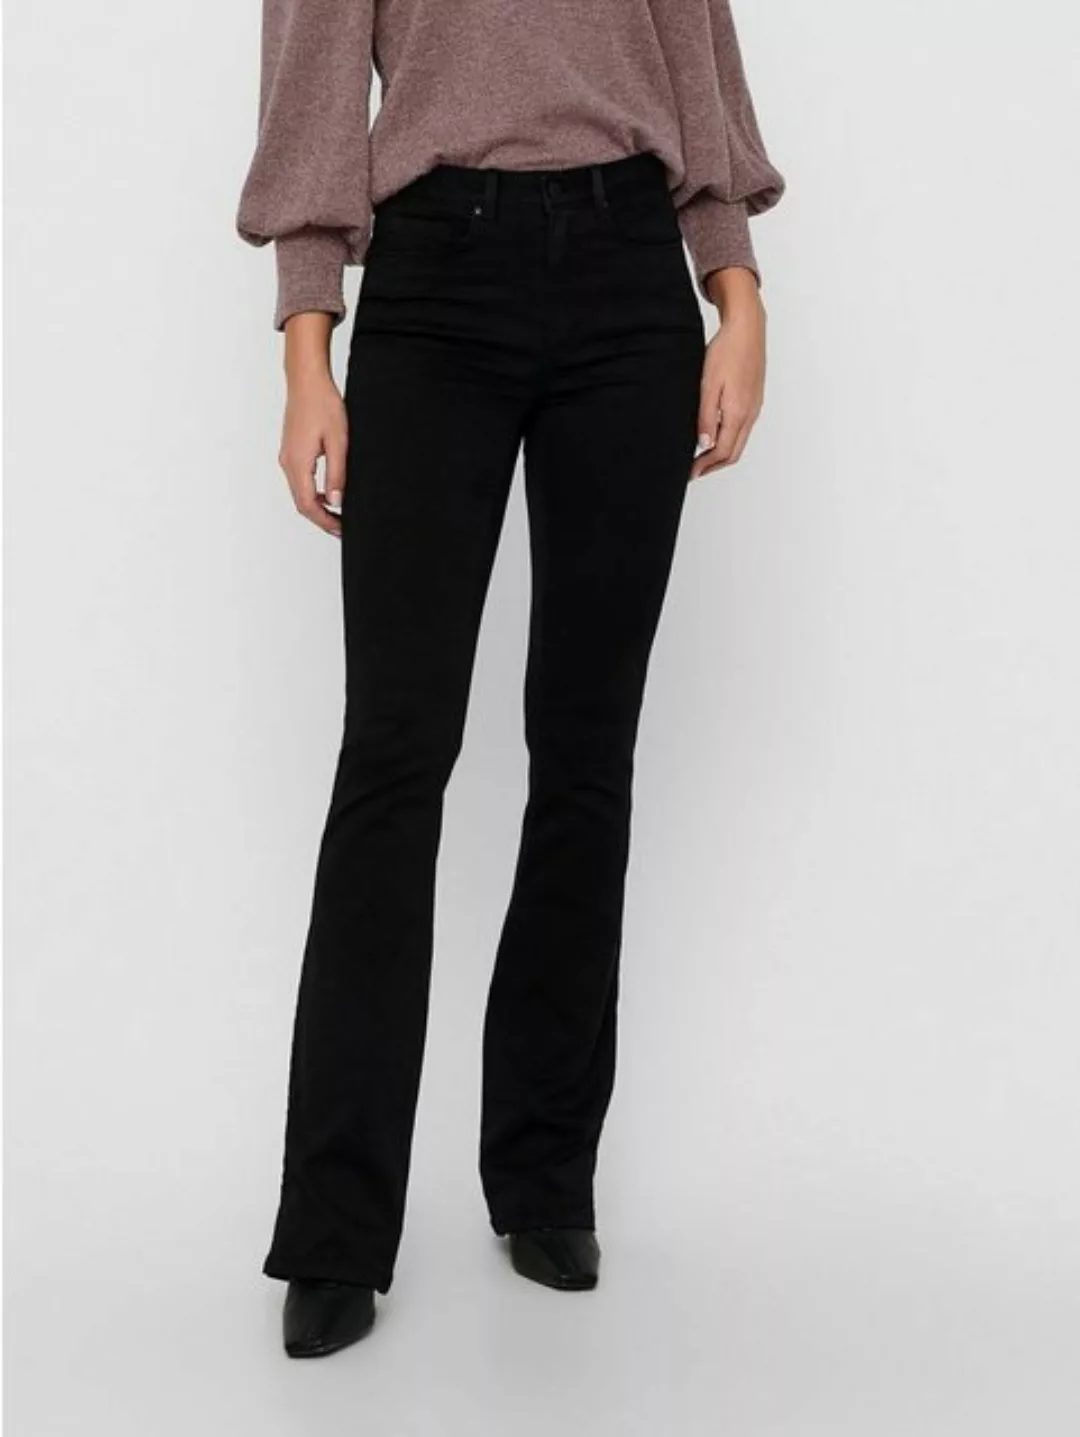 Only Damen Jeans ONLROYAL FLARE 600 Flared Fit - Schwarz - Black günstig online kaufen